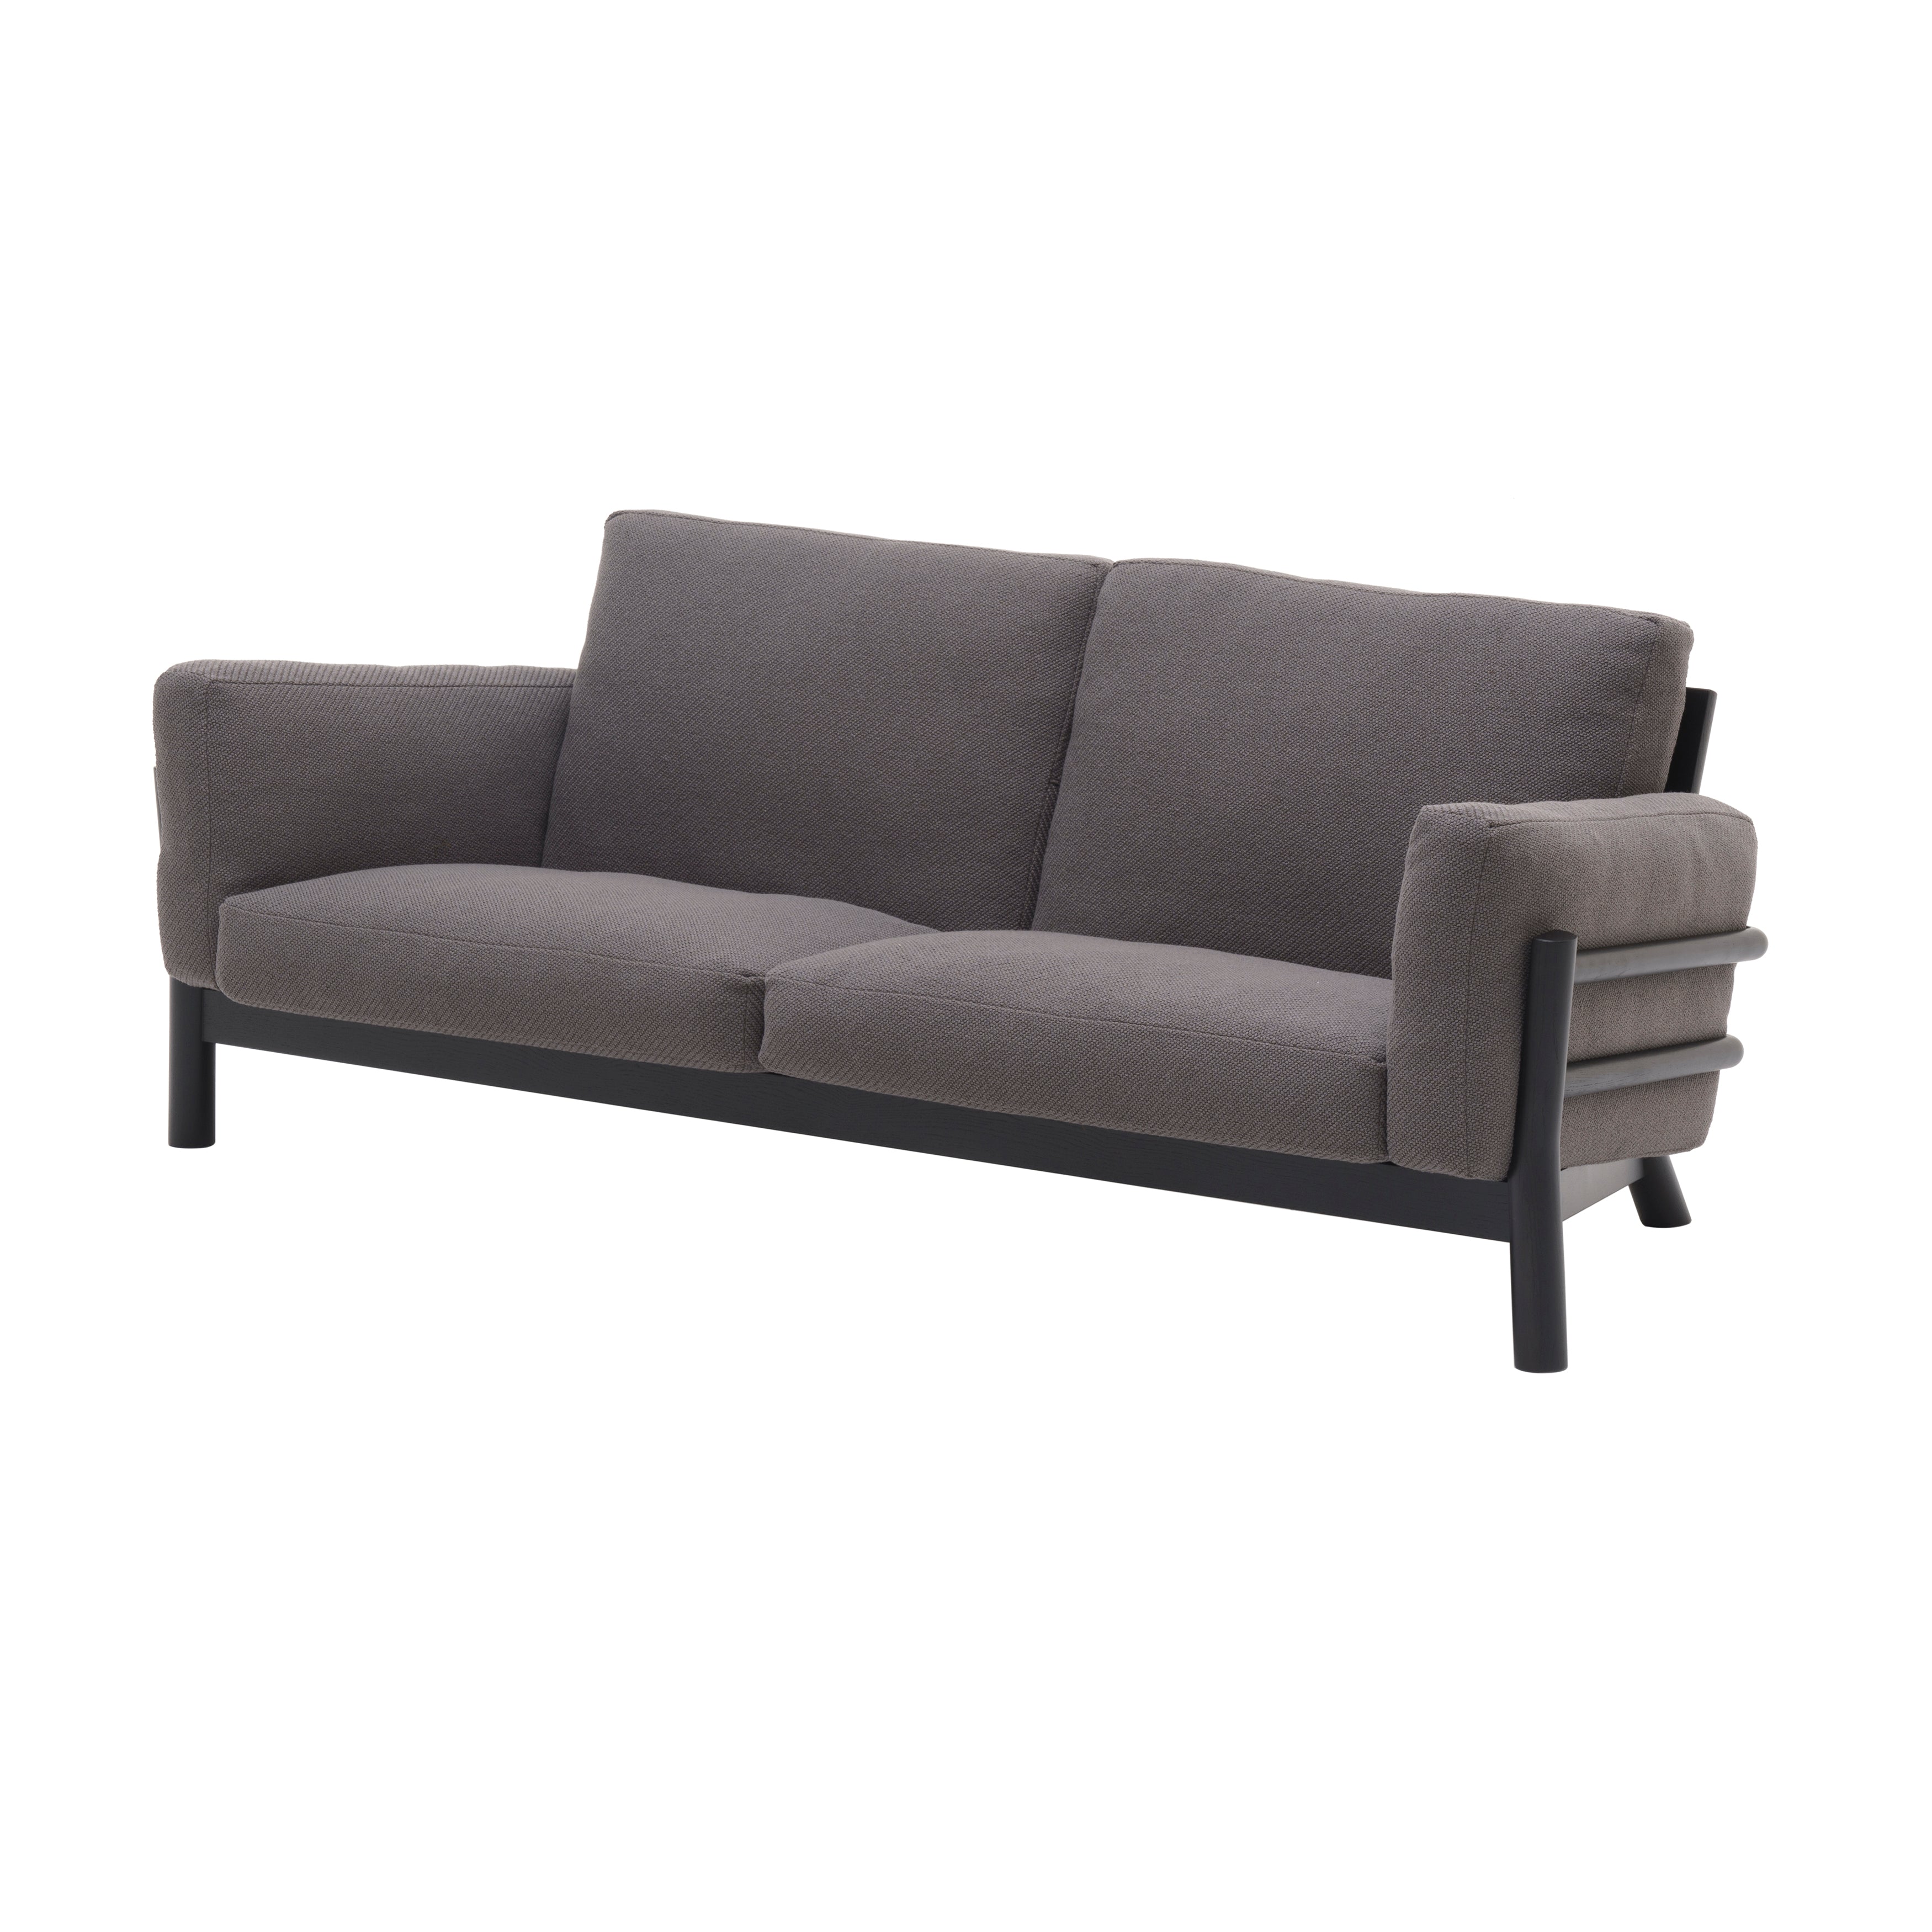 Castor Sofa 3 Seater: Black Oak